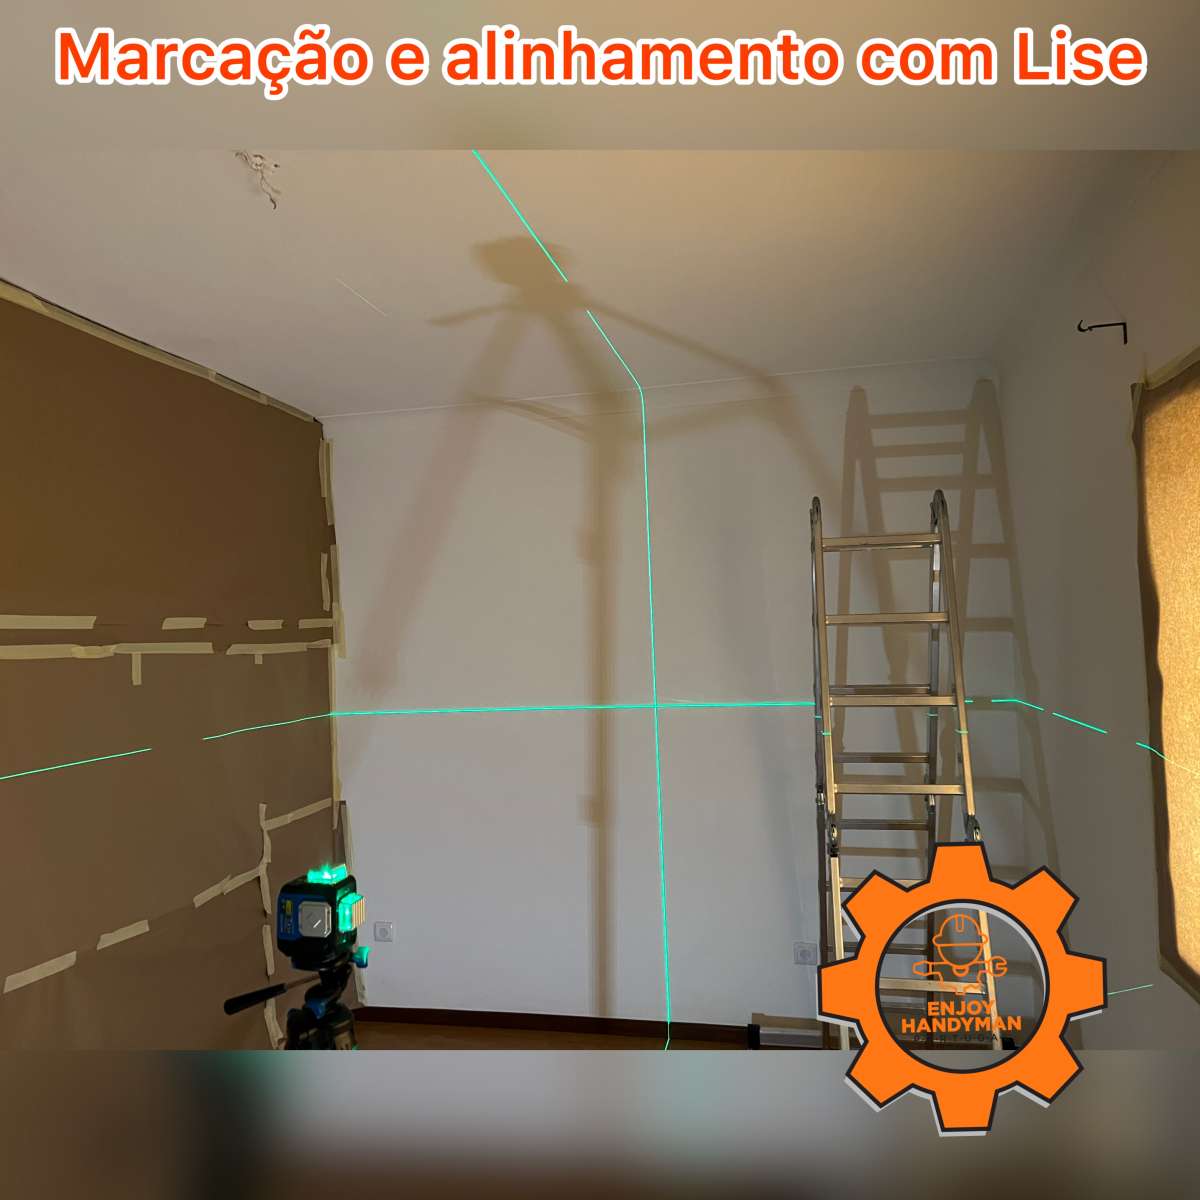 Enjoy Handyman Portugal (JorgeLuiz&EnedinnaSantos) - Vila Nova de Gaia - Reparação de Trotinete Elétrica